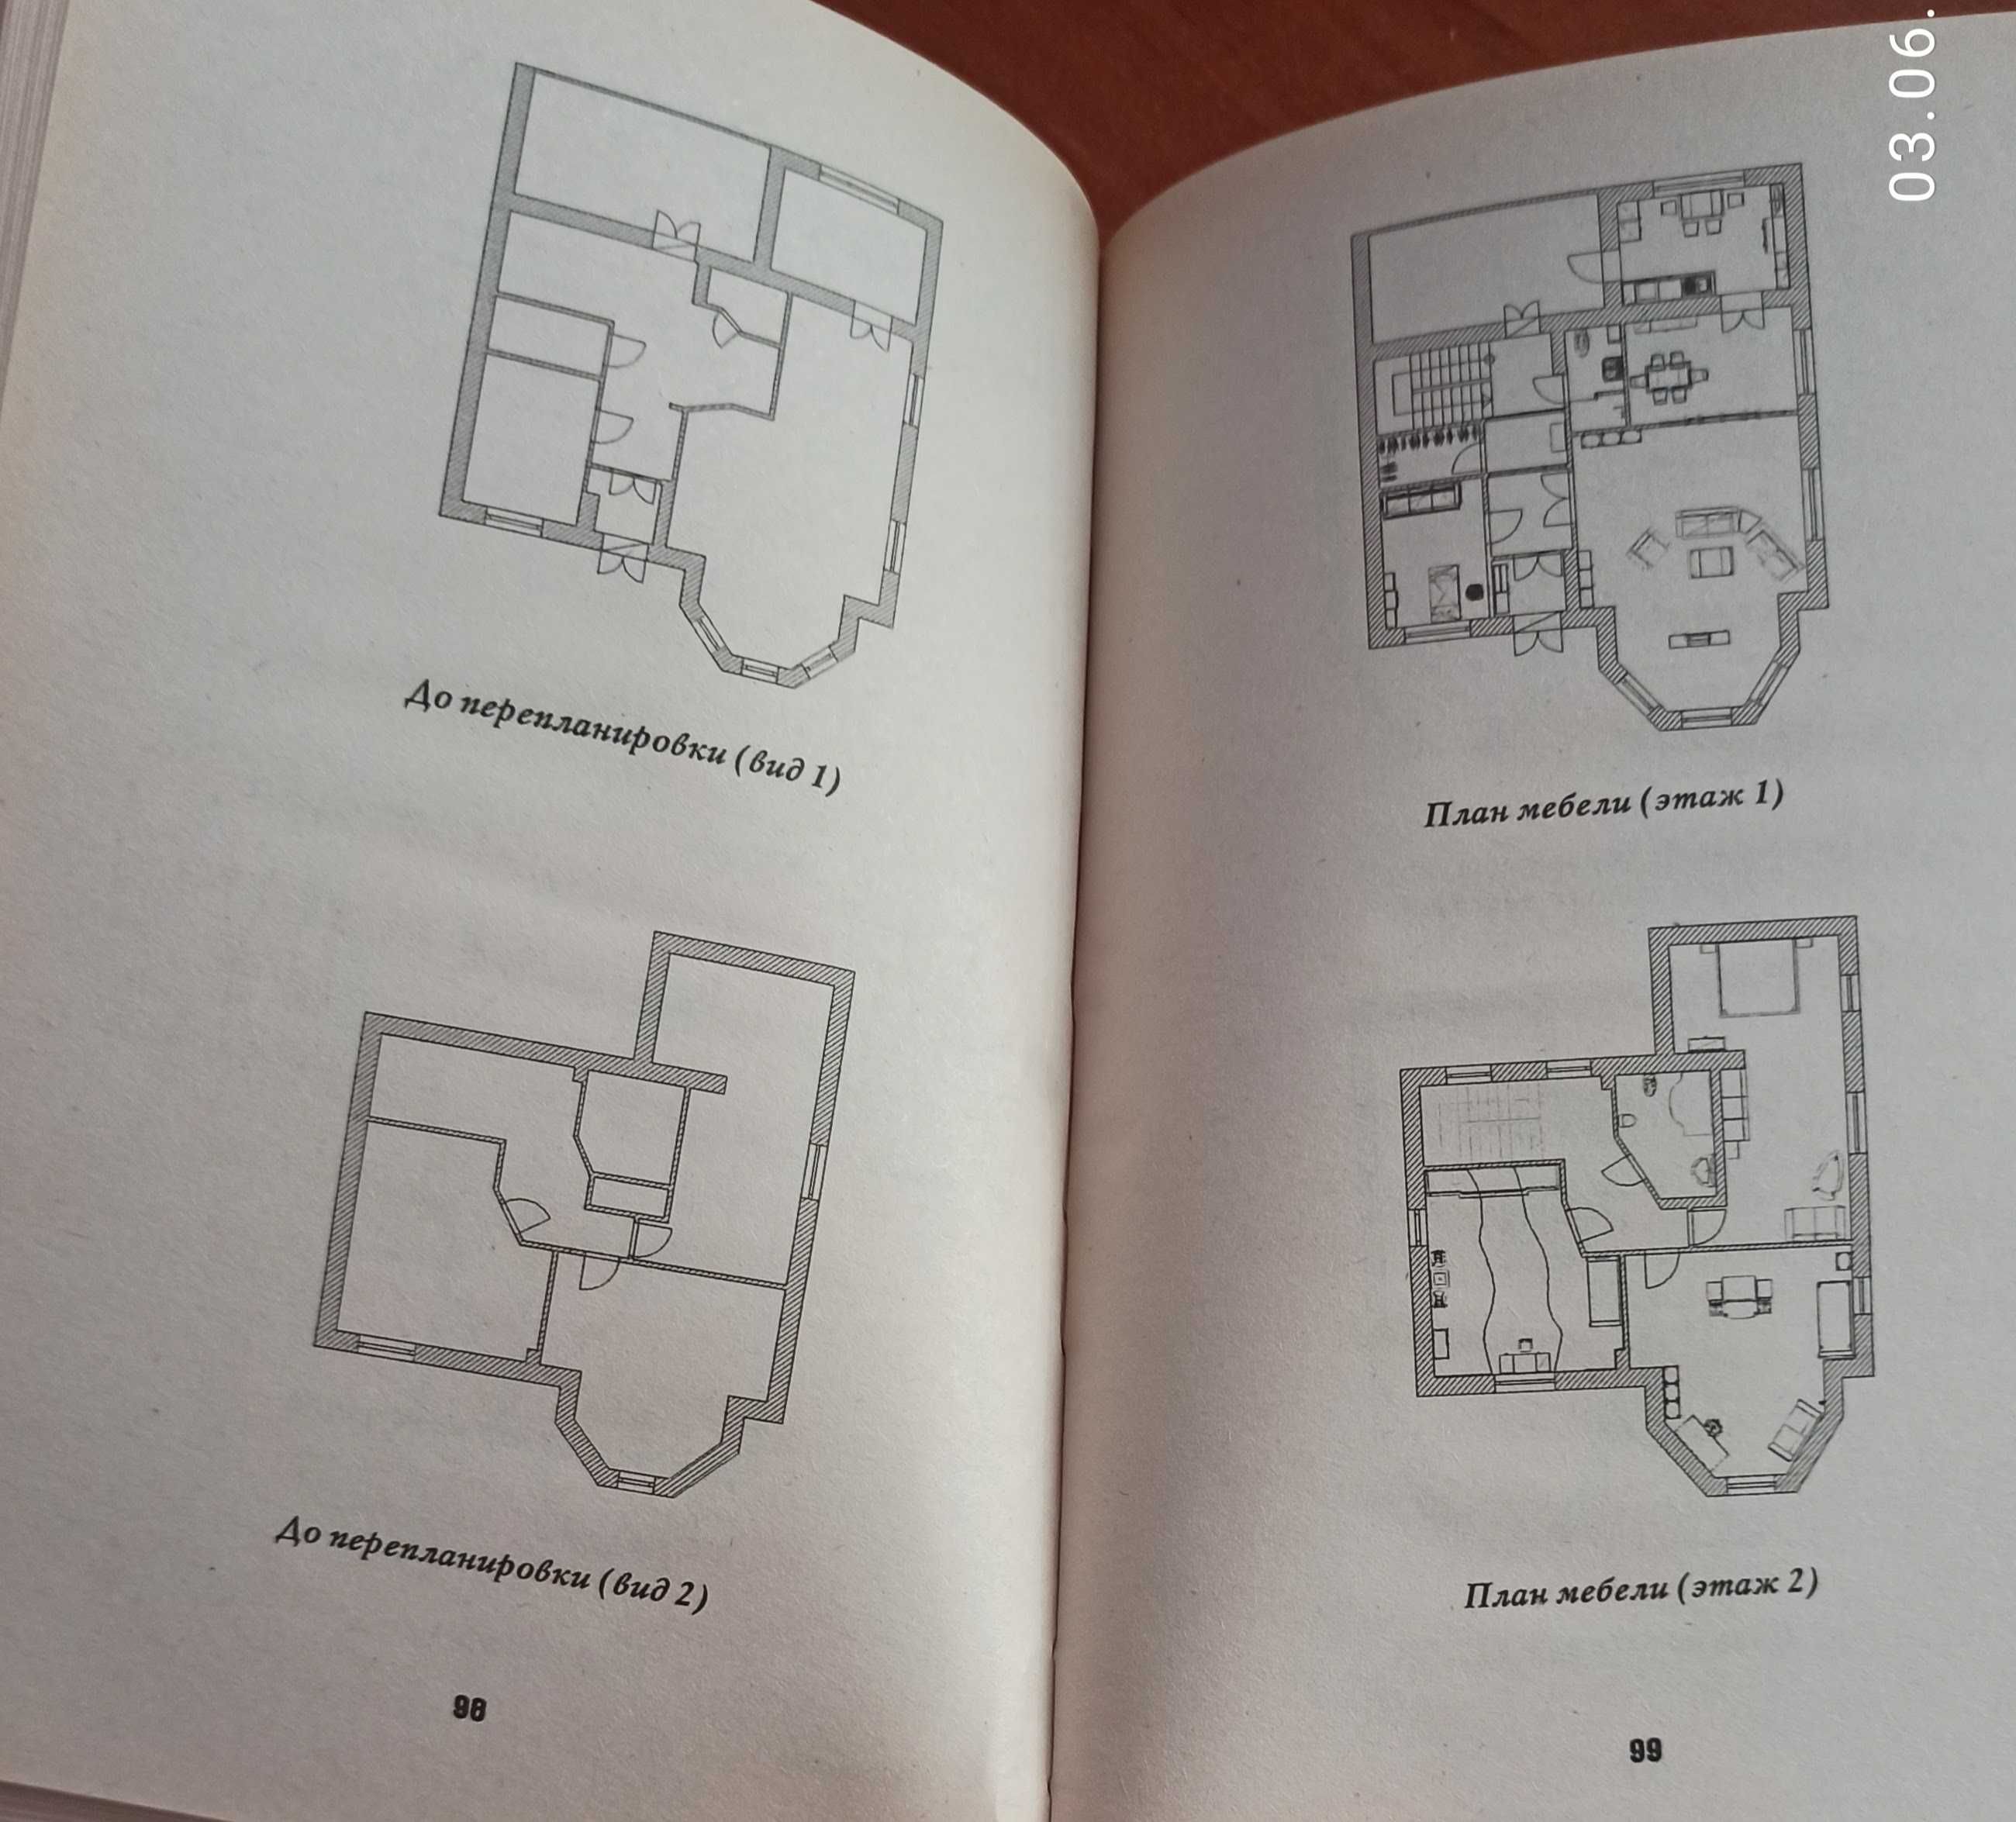 Книга "Лучшие дизайн - проекты для дома и квартиры"